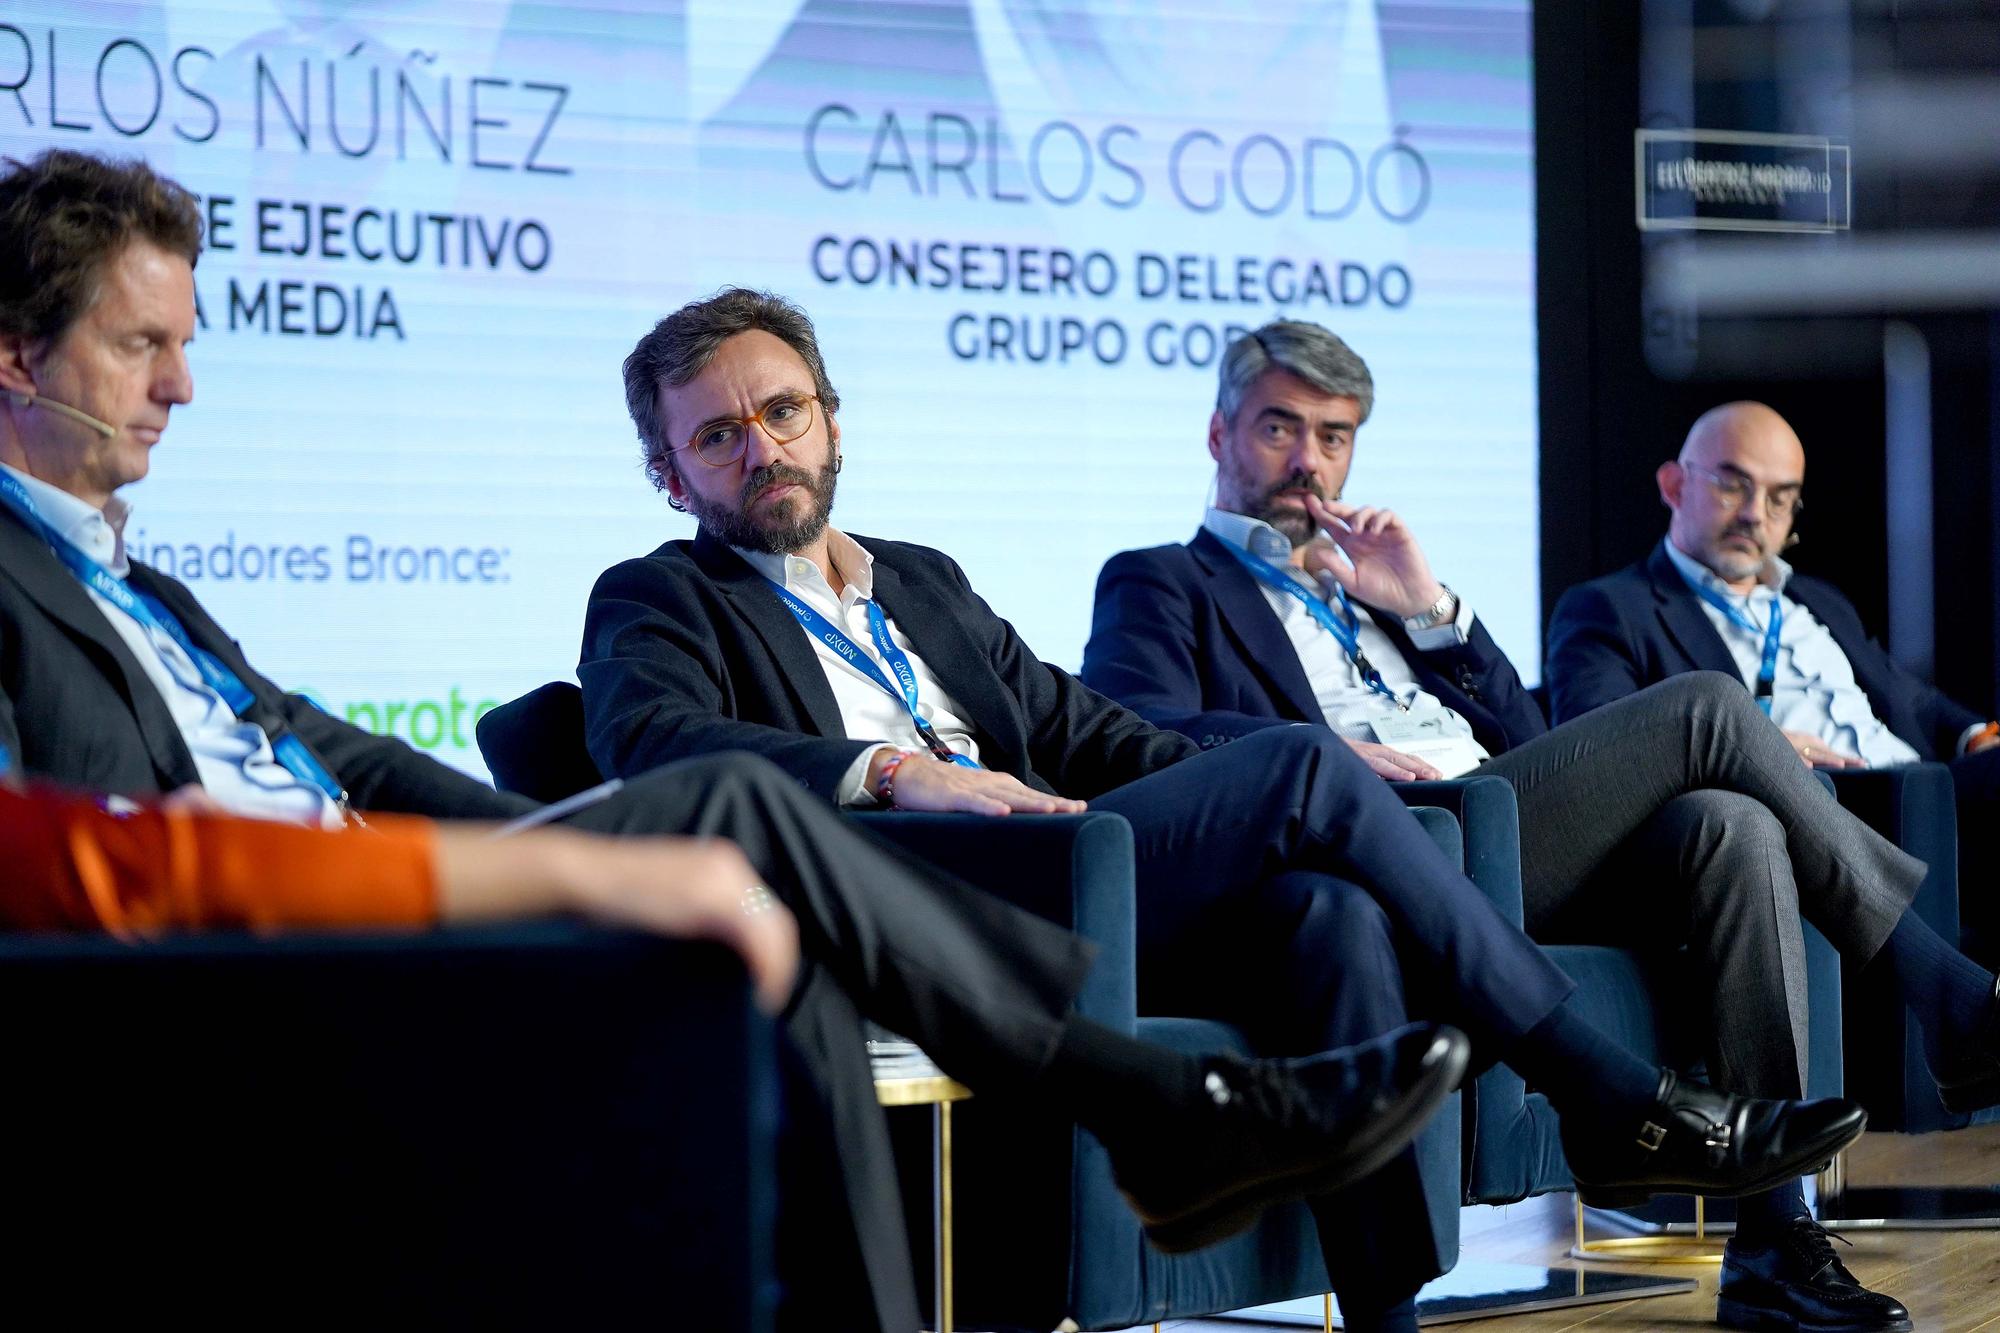 Luis Enríquez, Aitor Moll, Carlos Núñez, y Carlos Godó analizan los retos y oportunidades que afrontan los medios de comunicación